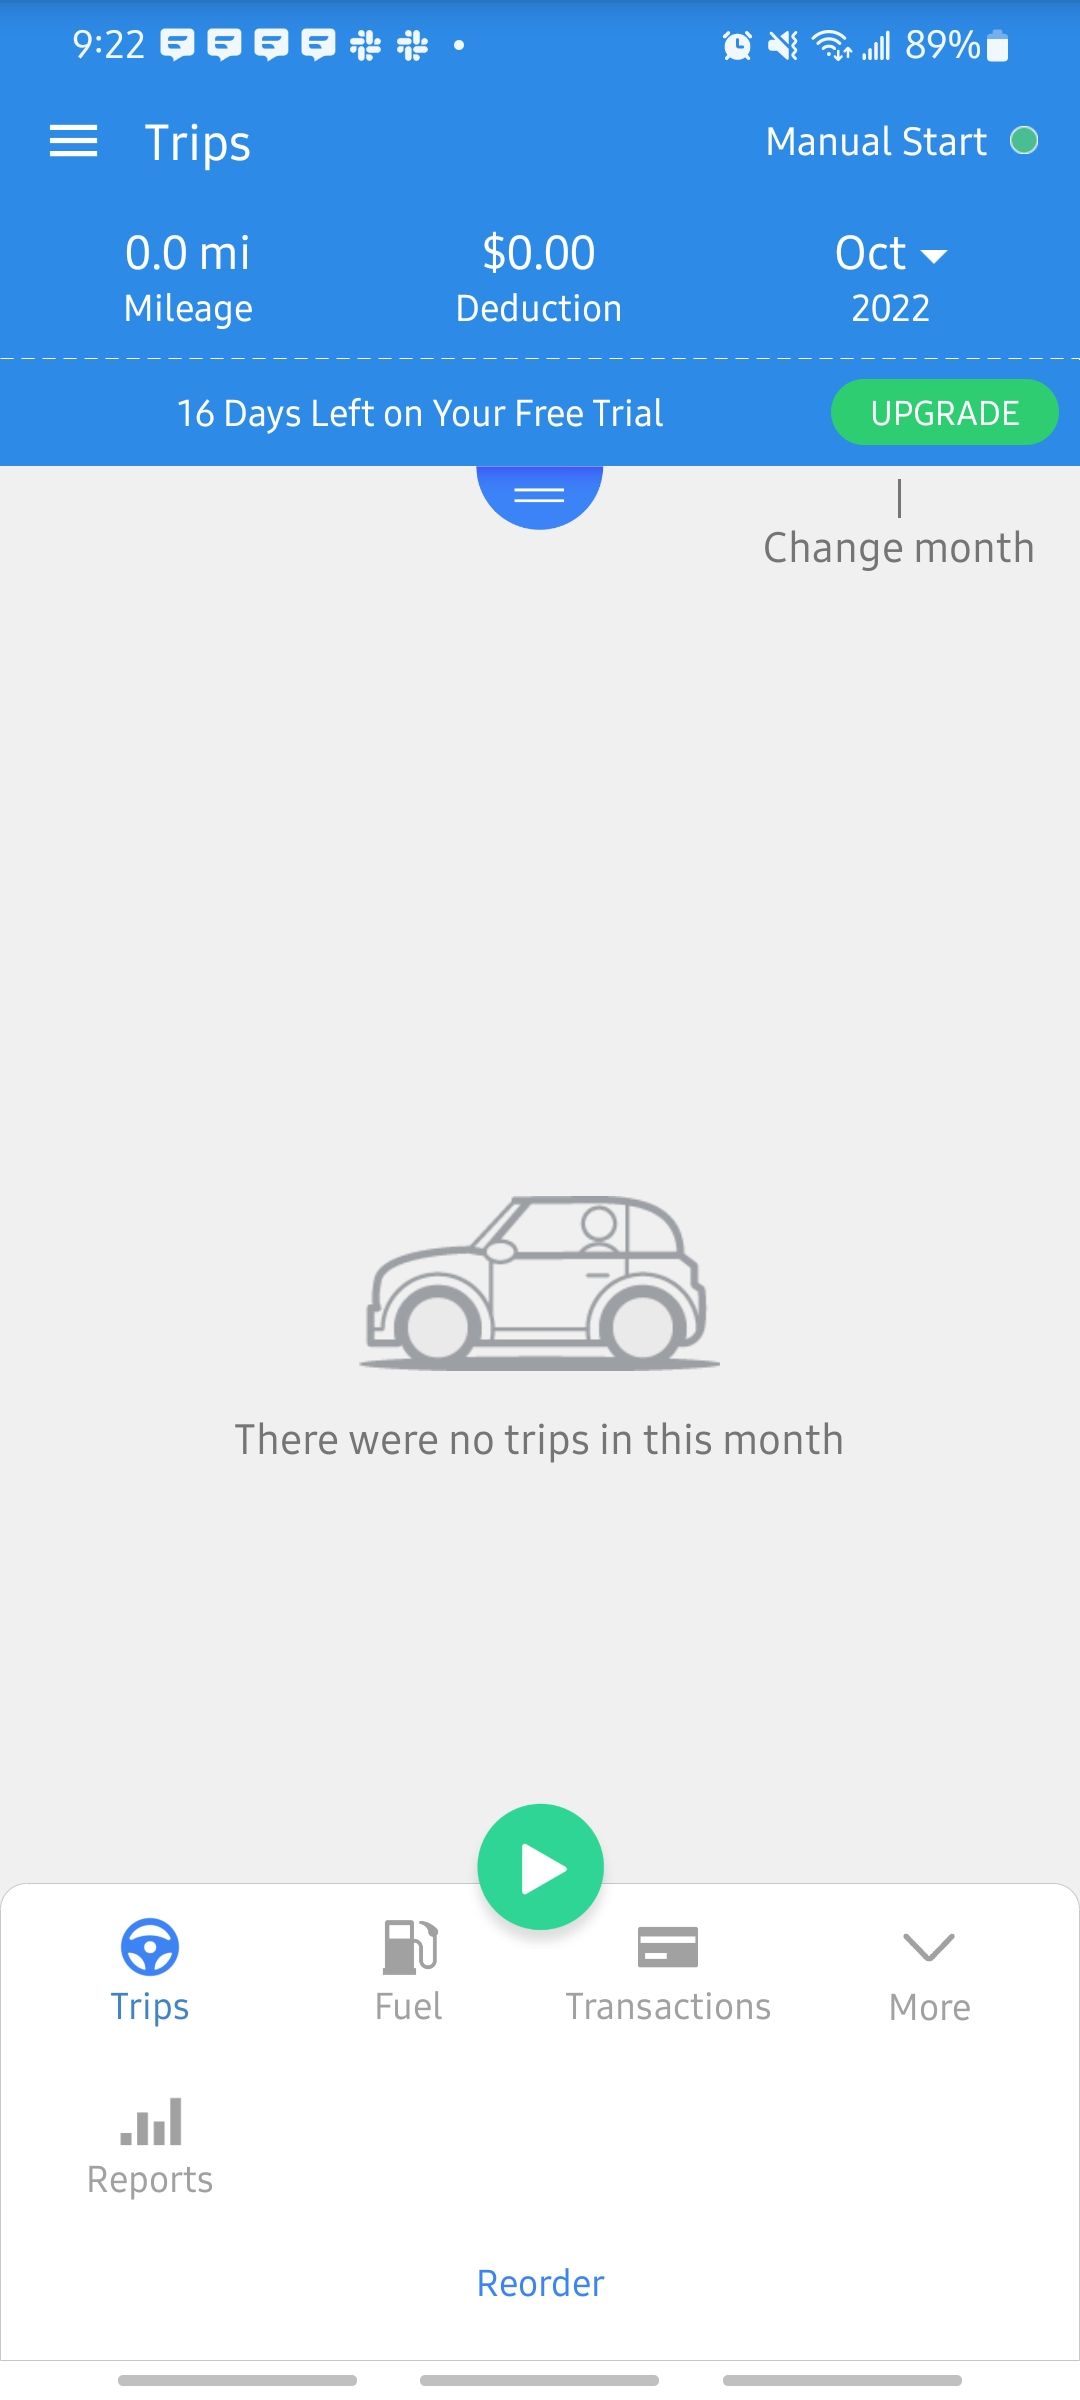 triplog app looking at trips taken